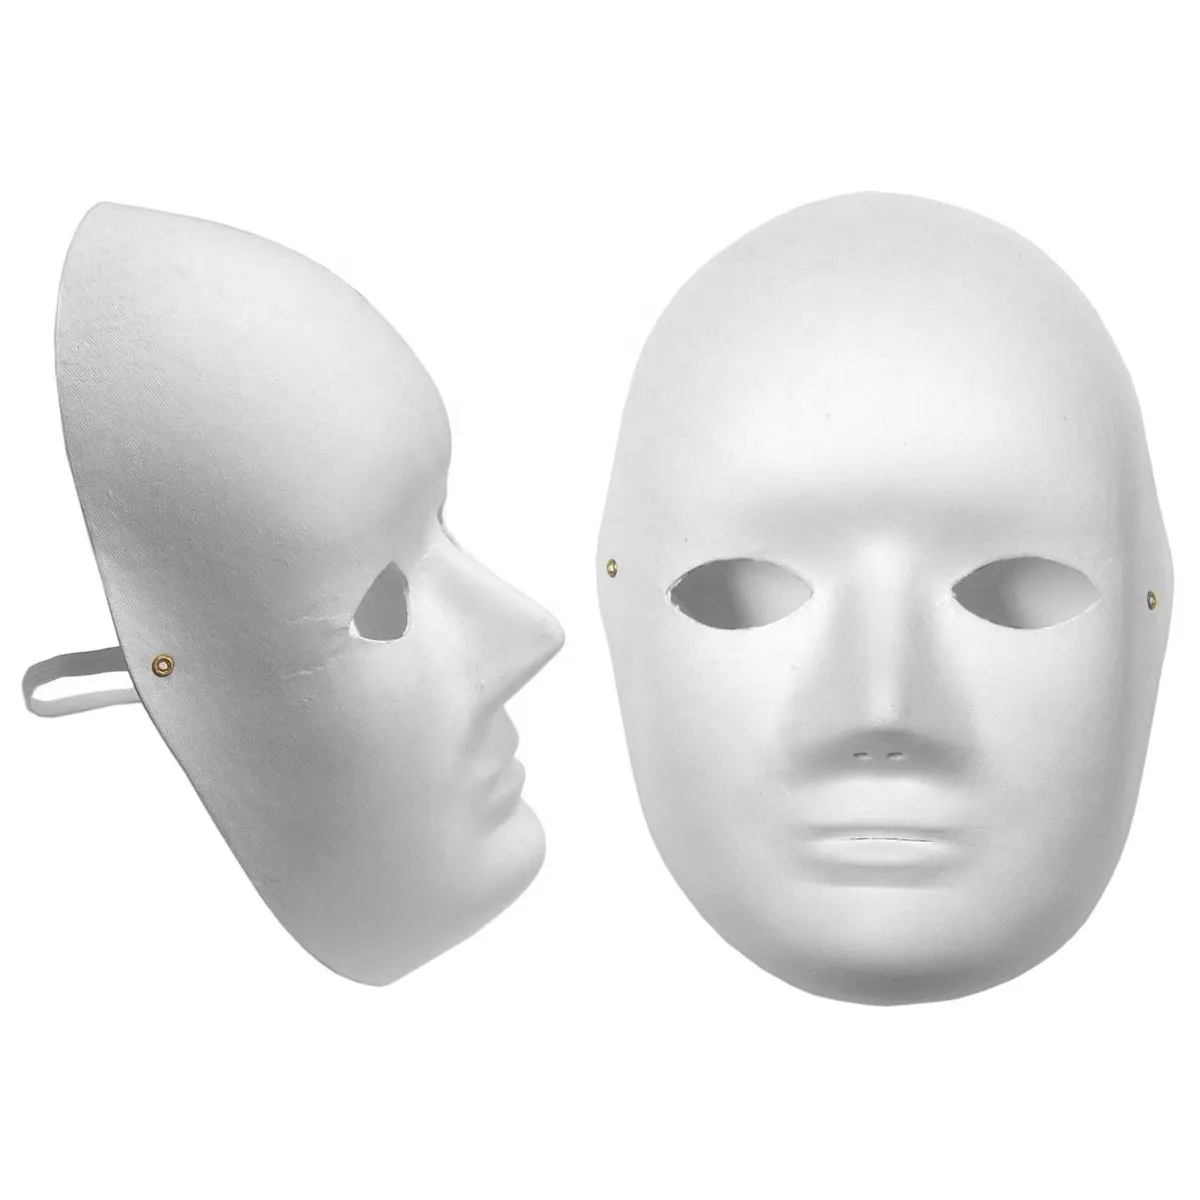 Poetic Exist Männer und Frauen Voll gesicht Weiße Farbe Party begünstigt leere Papier Mache Masken